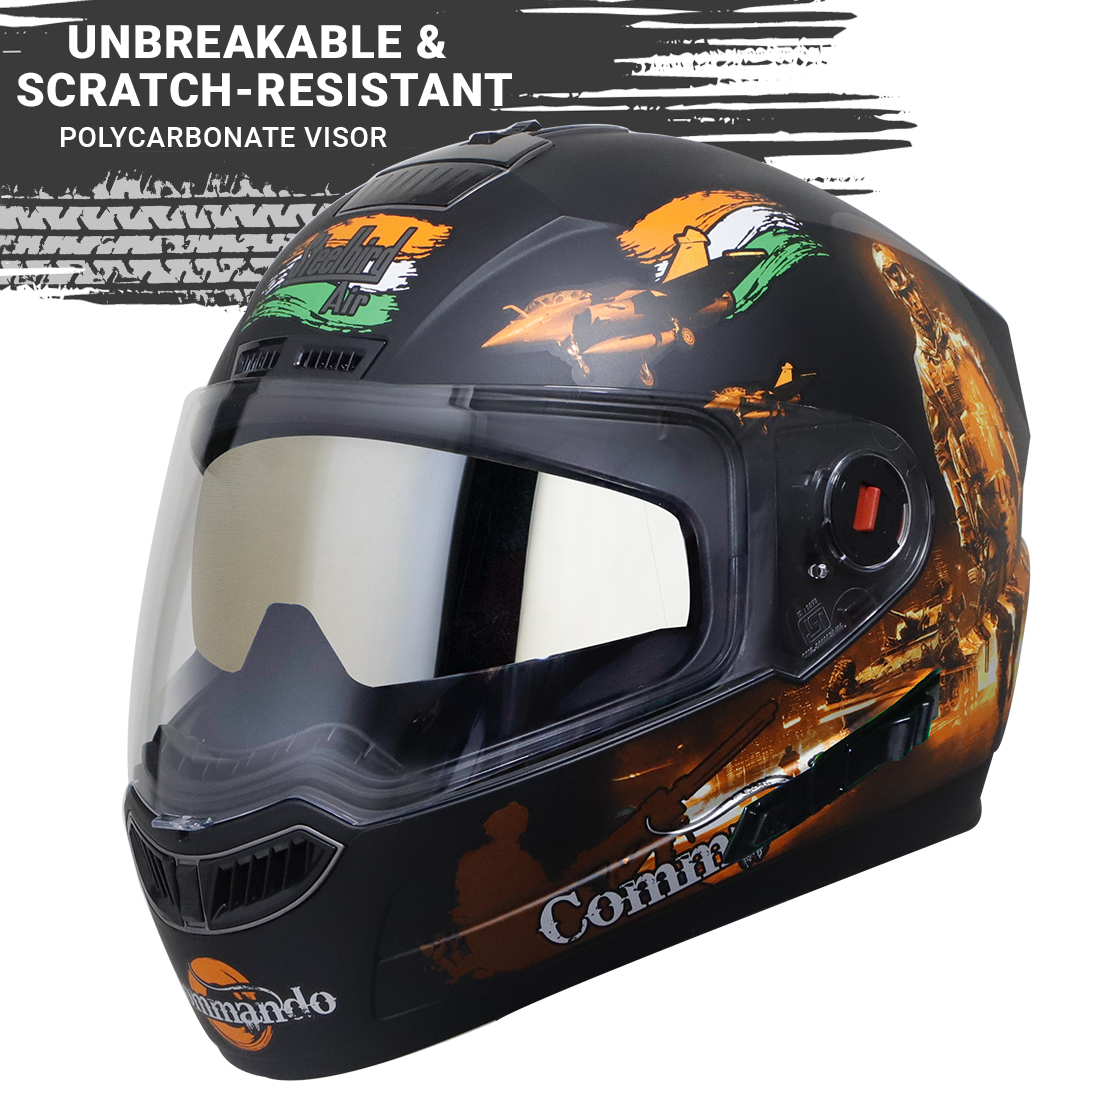 Steelbird SBA-1 Commando Double Visor Full Face Graphics Helmet, Inner Silver Sun Shield And Outer Clear Visor (Glossy Black Orange)